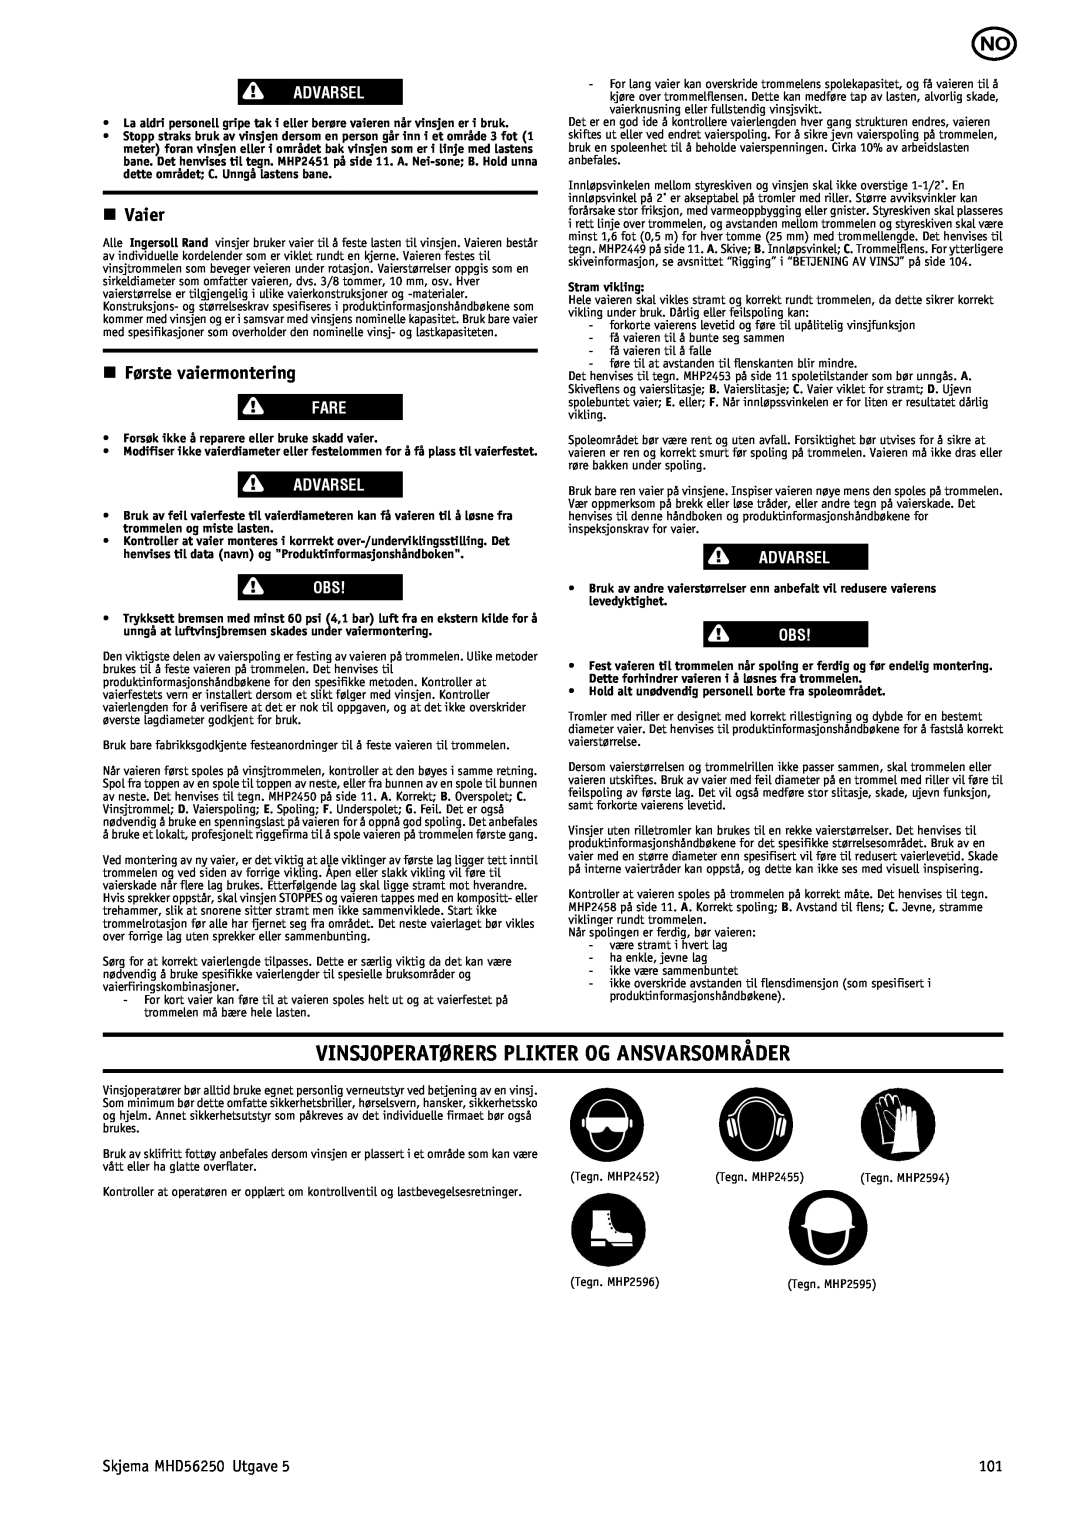 Ingersoll-Rand MHD56250 manual Vinsjoperatørers Plikter Og Ansvarsområder, n Vaier, n Første vaiermontering, Advarsel, Fare 